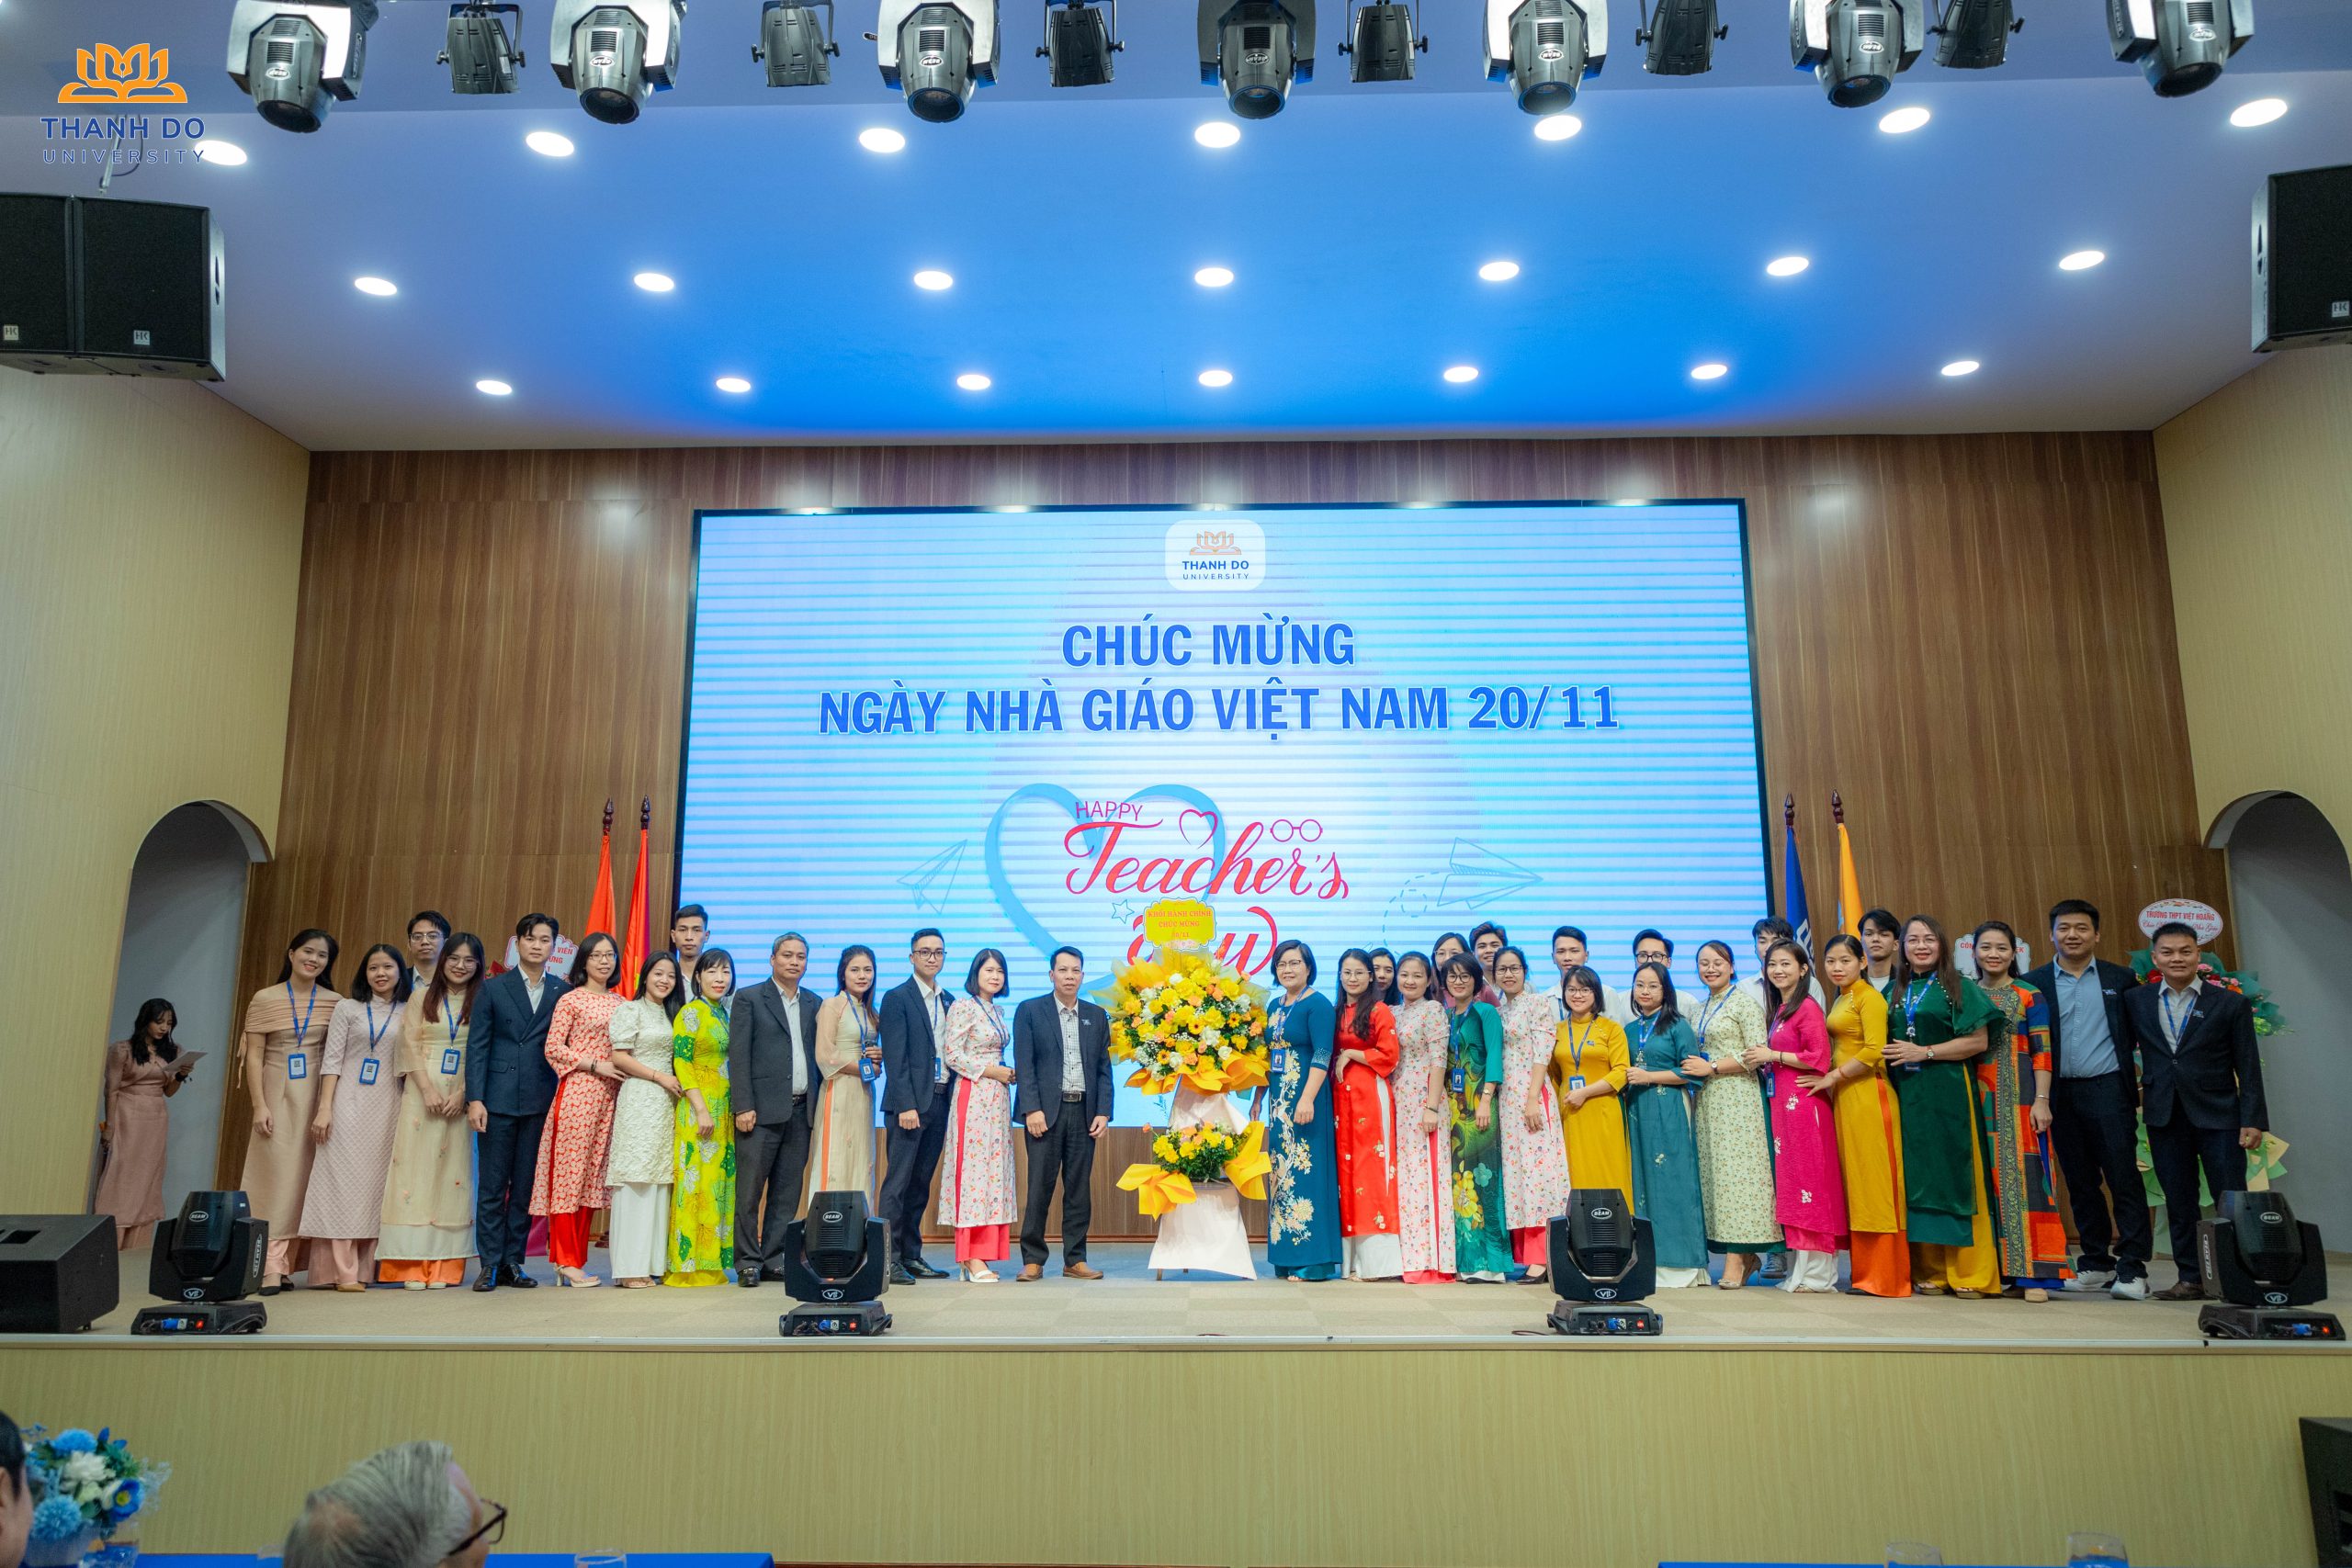 Những đóa hoa tươi thắm Chào mừng Ngày Nhà giáo Việt Nam từ tập thể Cán bộ các phòng ban Trường ĐH Thành Đô